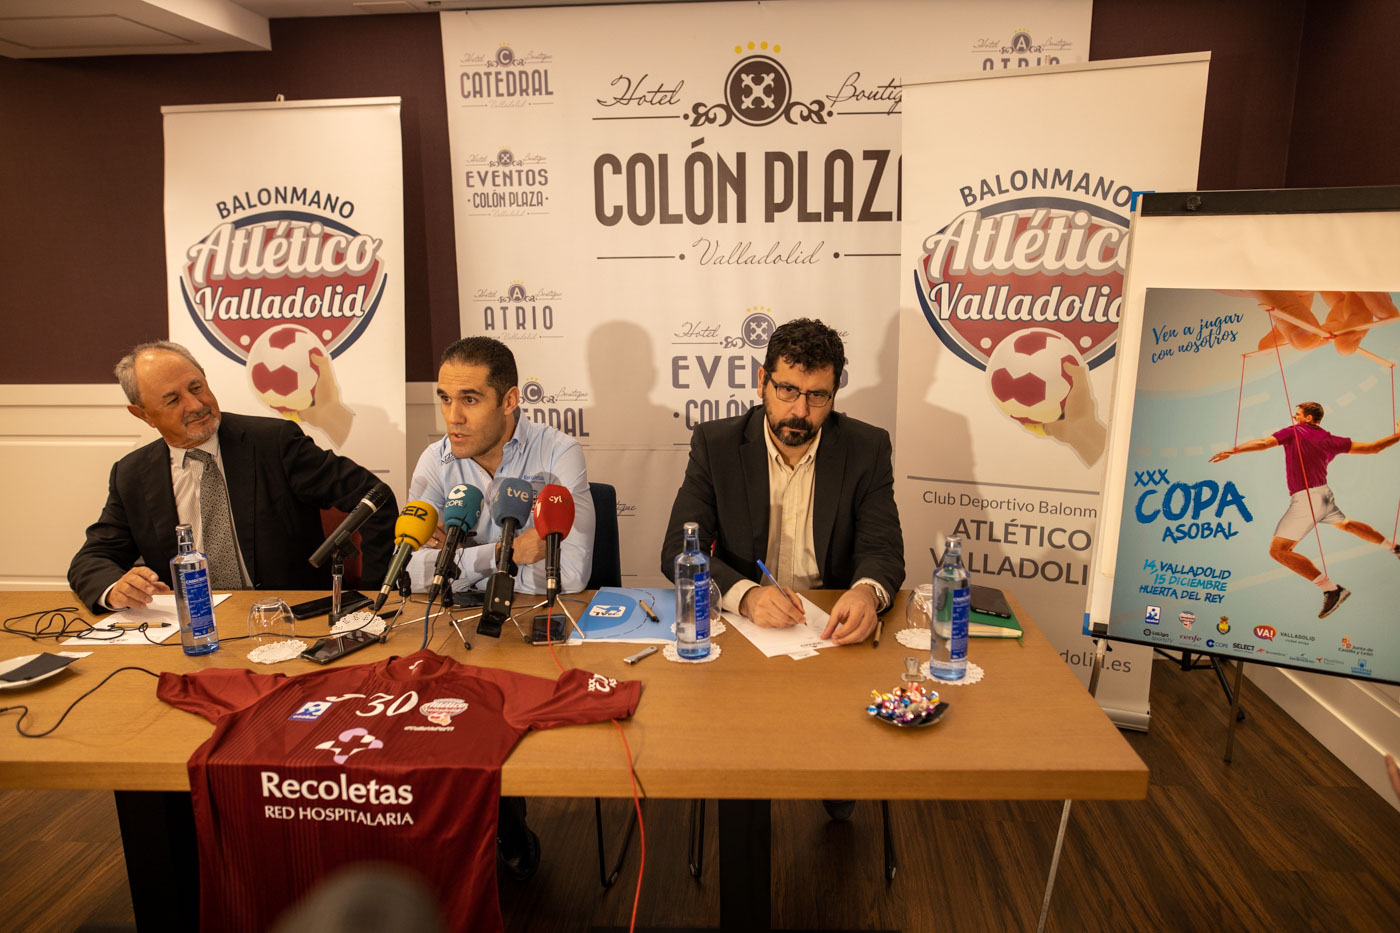 La Copa ASOBAL de Valladolid se pone en marcha | Galería 6 / 8